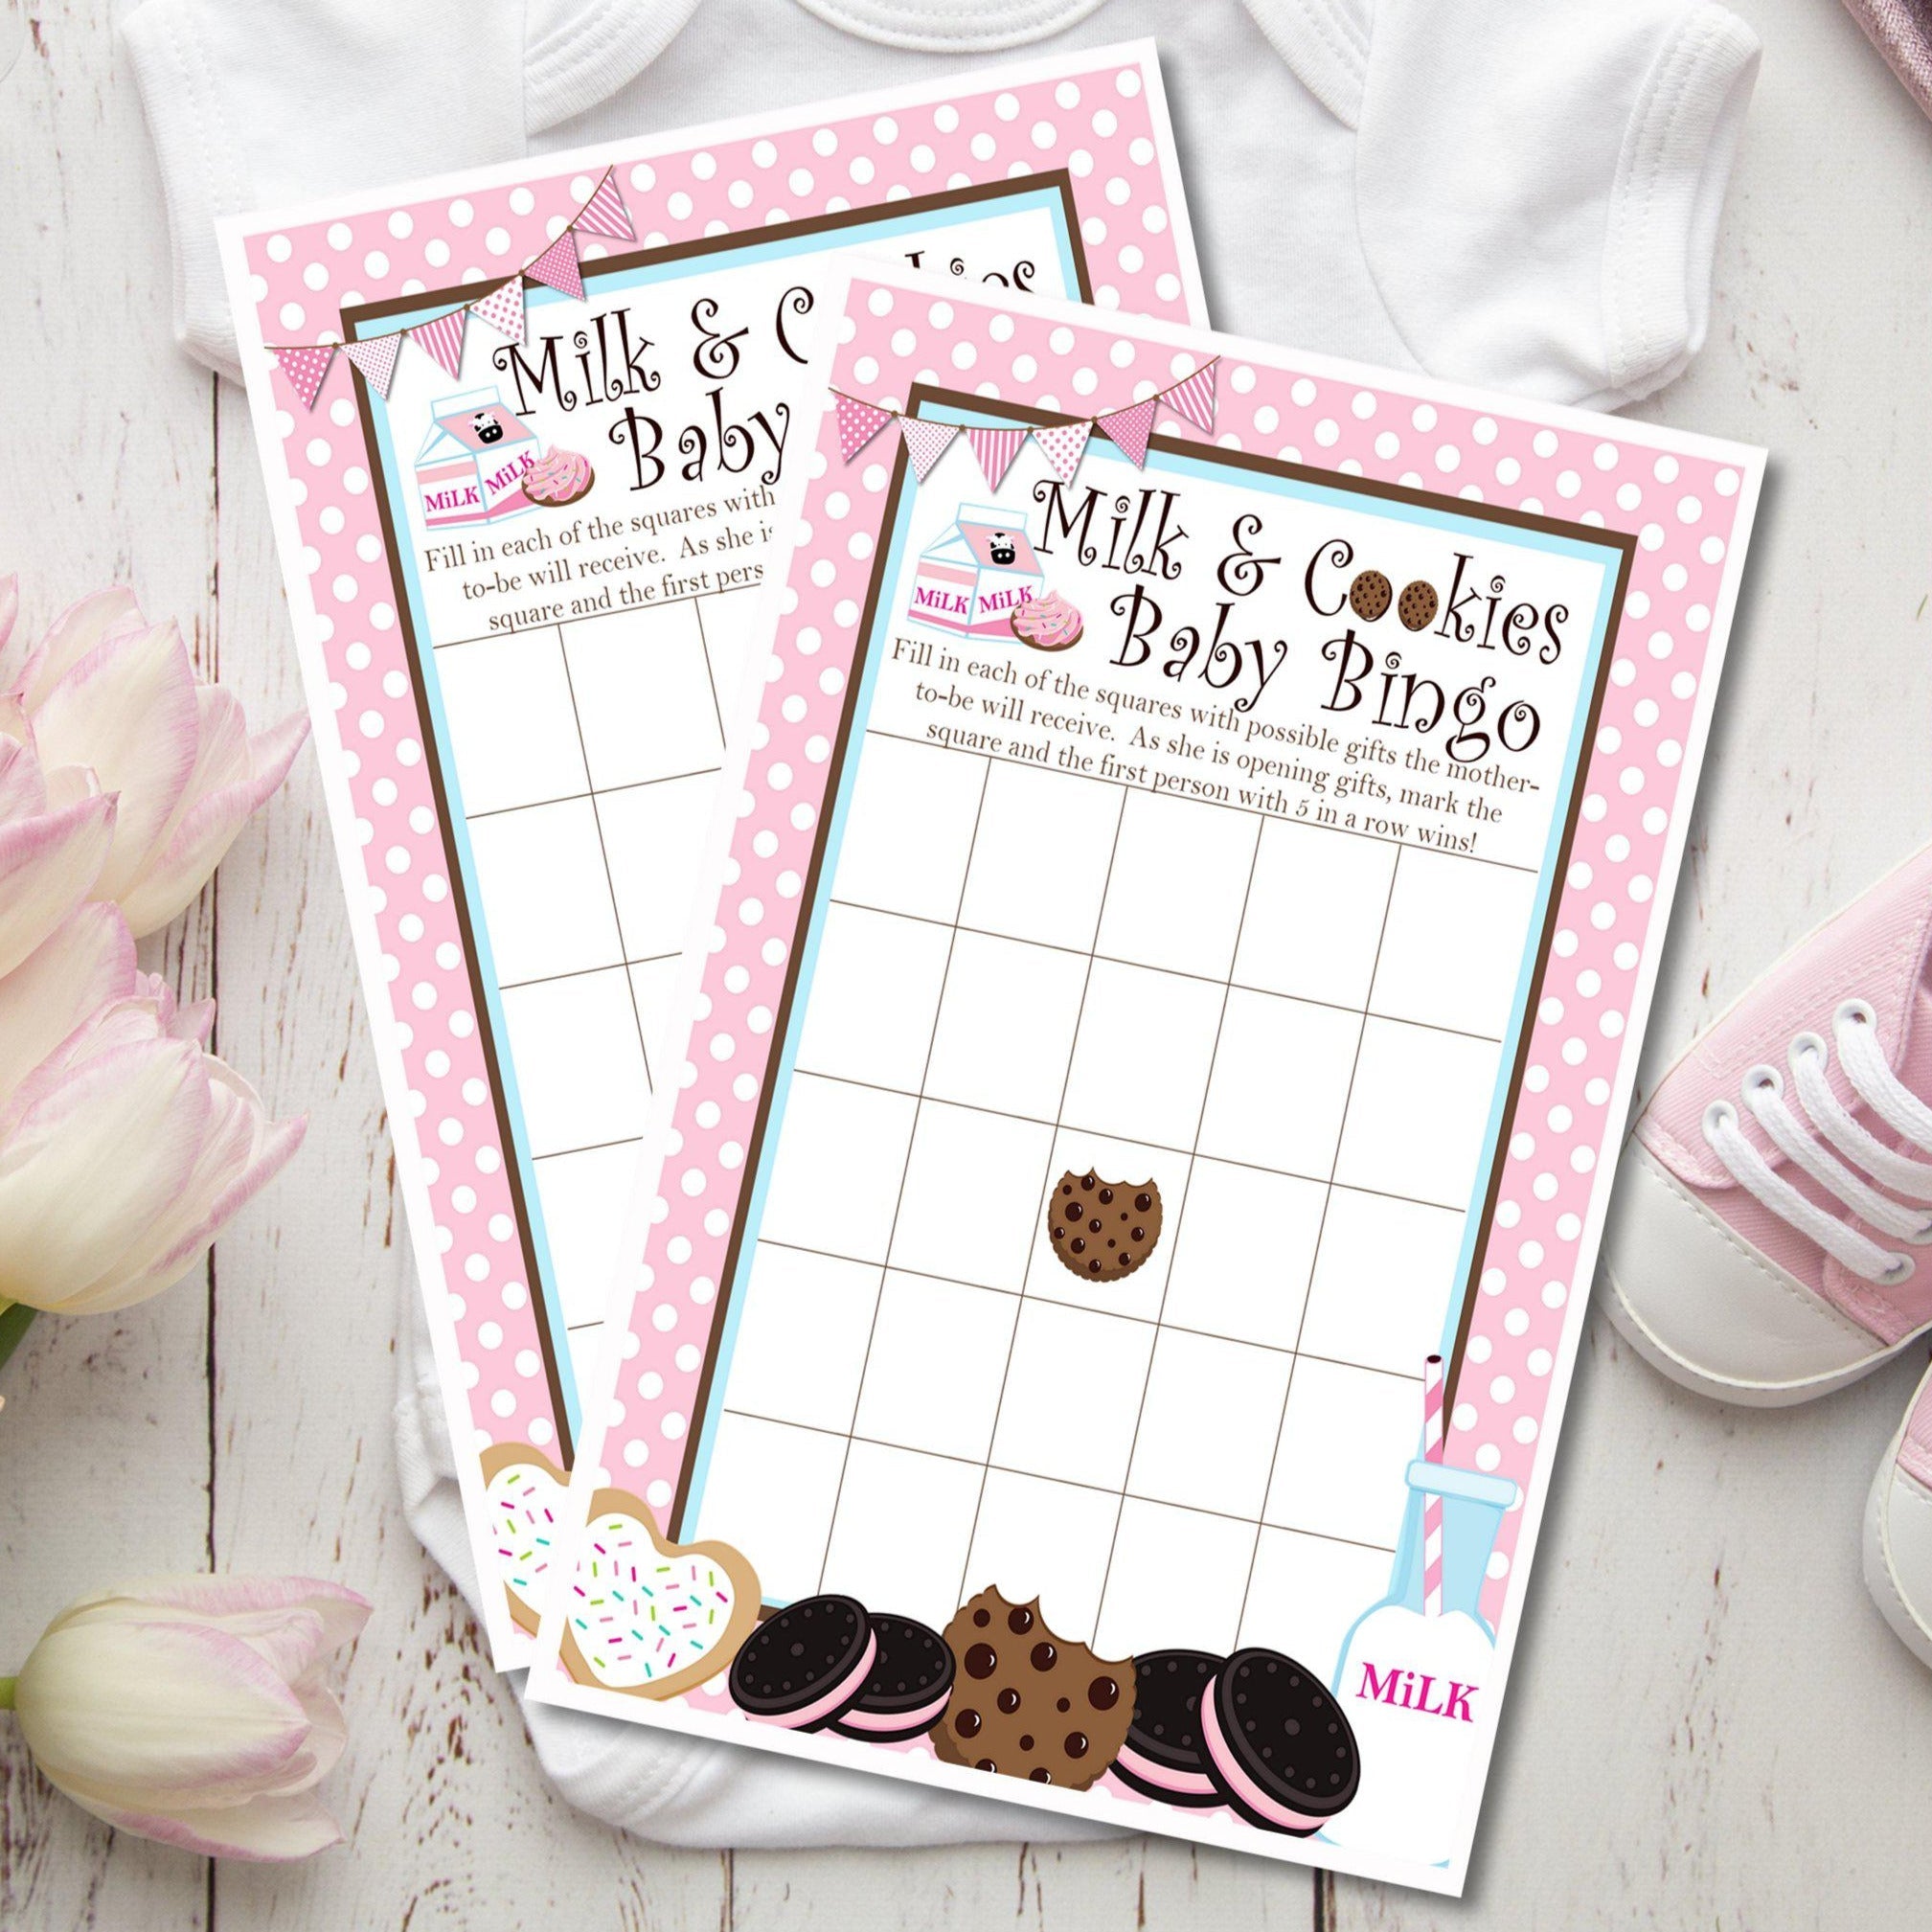 Milk & Cookies Baby Shower Bingo Cards